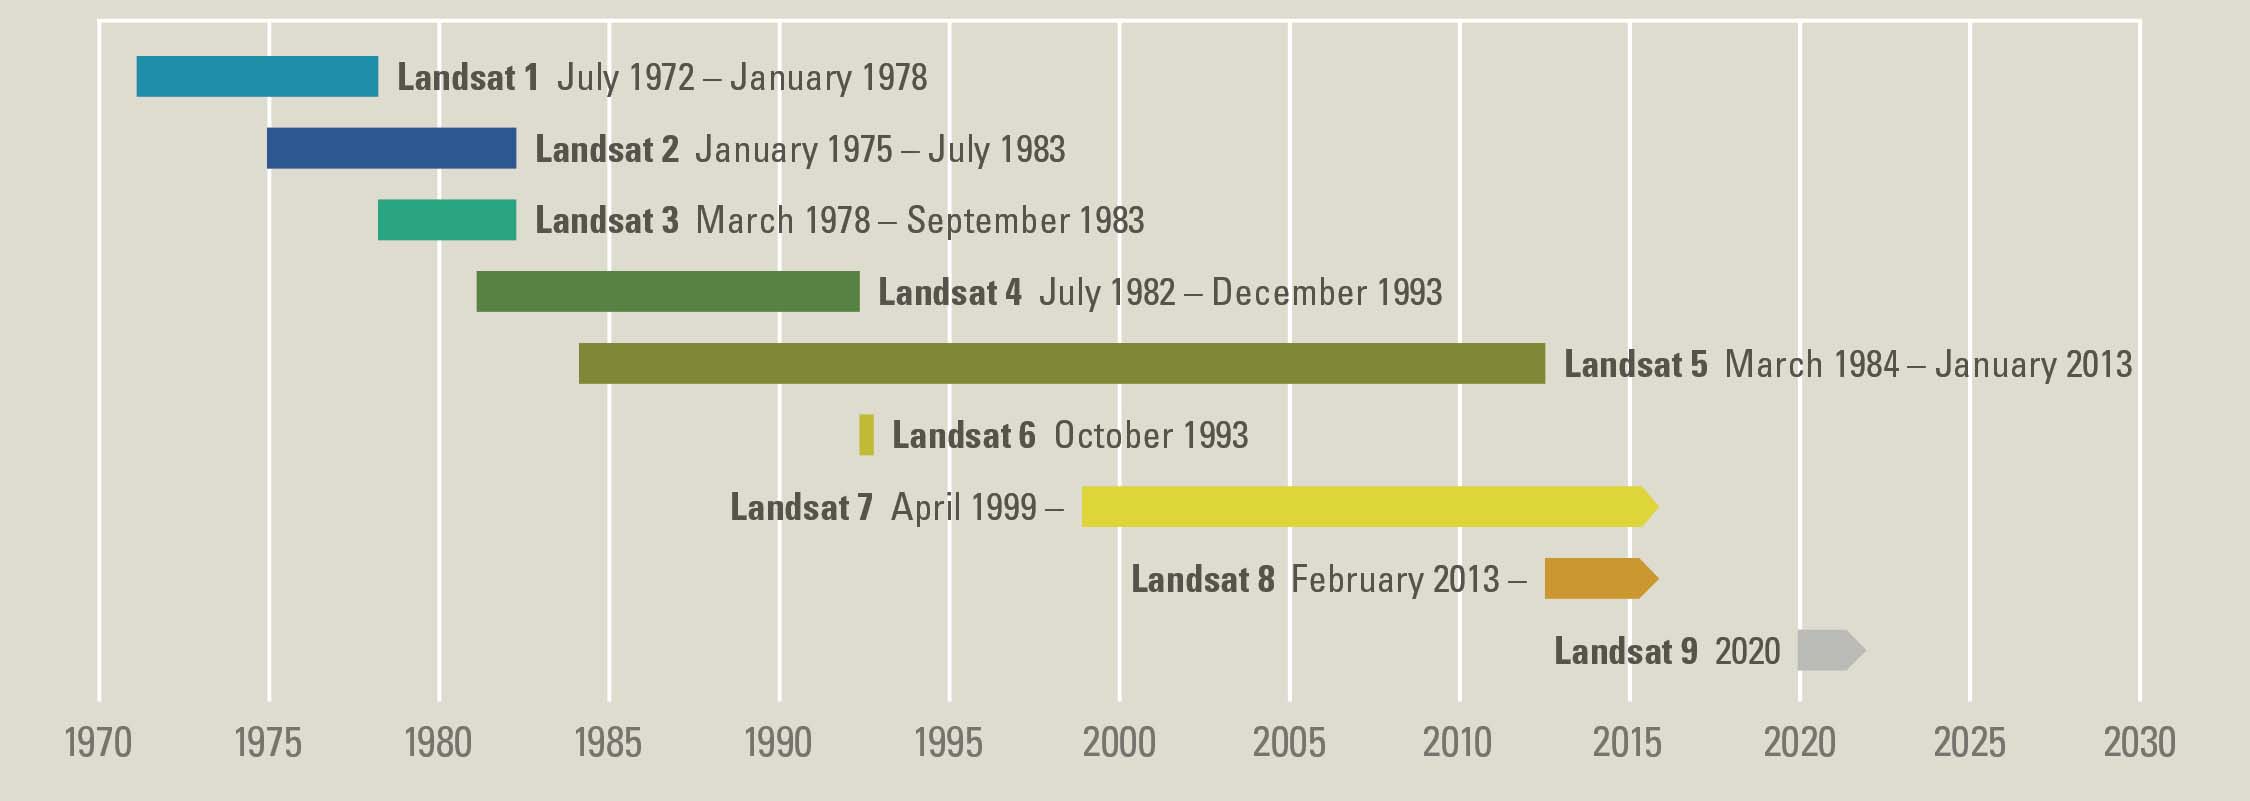 USGS Landsat Timeline